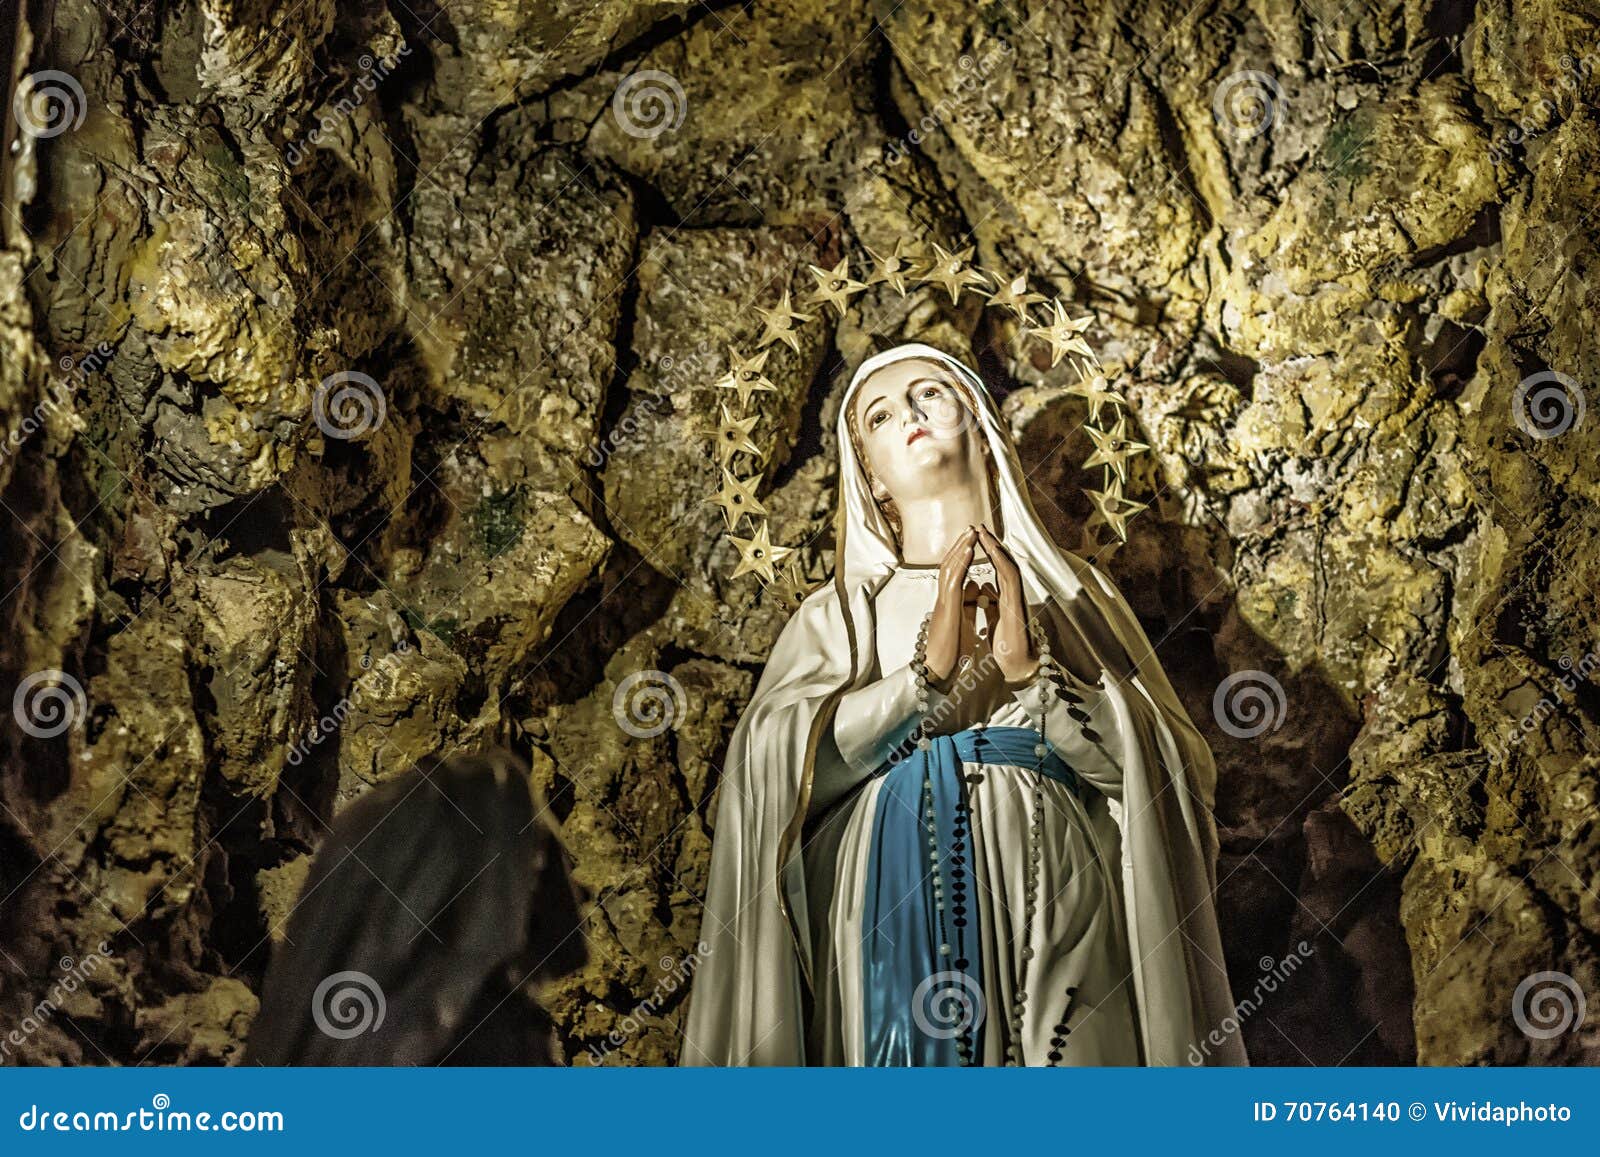 Apparition De Vierge Marie Beni Dans La Grotte De Lourdes Photo Stock Image Du Detail Statue